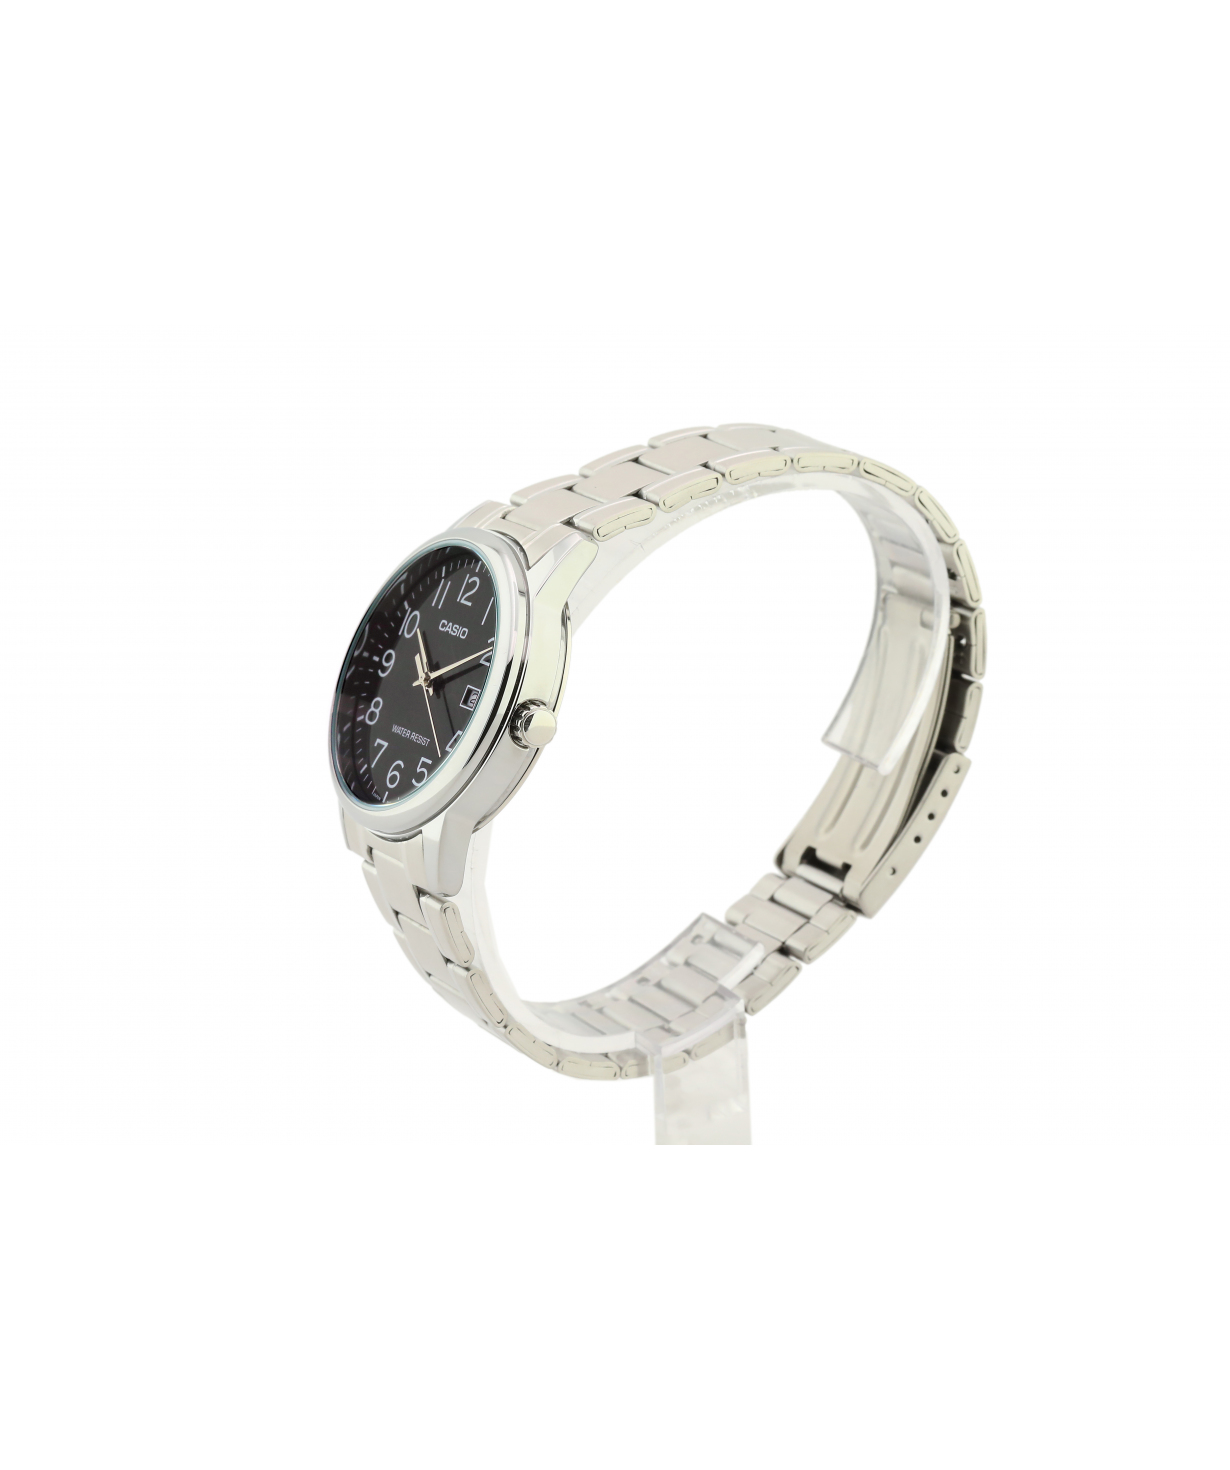 Ժամացույց  «Casio» ձեռքի  MTP-V002D-1BUDF